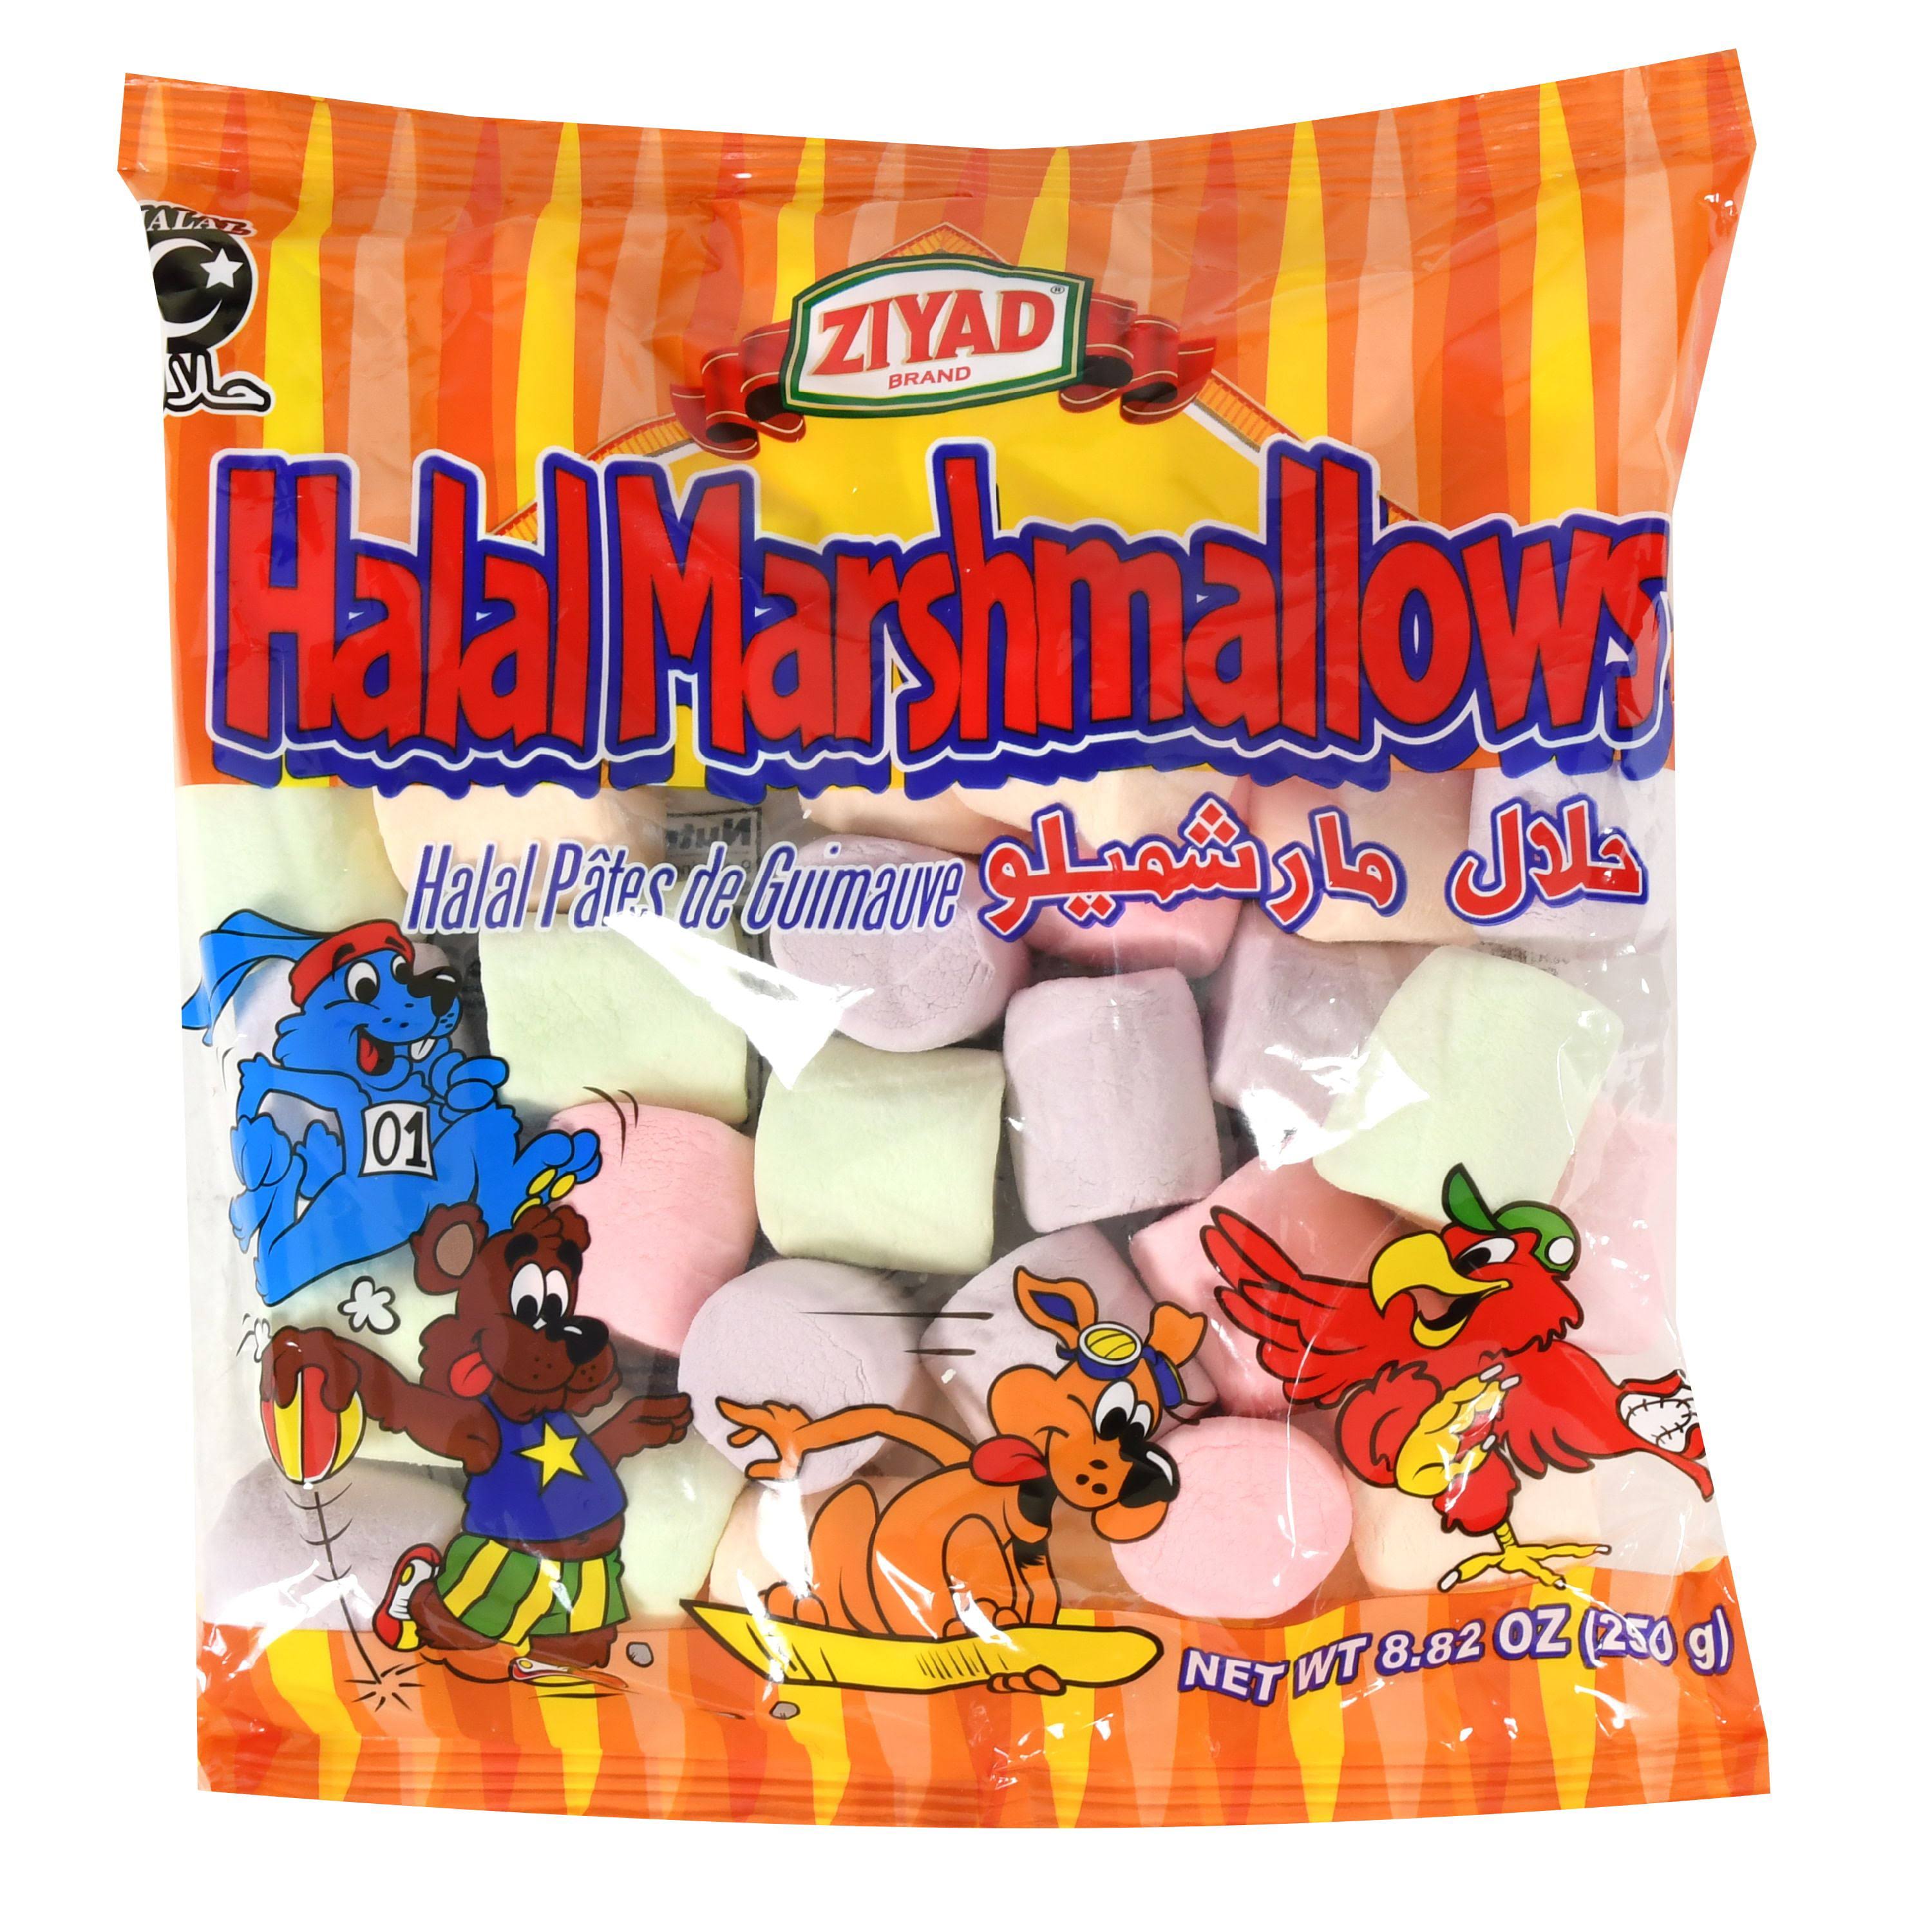  Ziyad Gourmet Halal Giant Marshmallows in Jumbo Bag